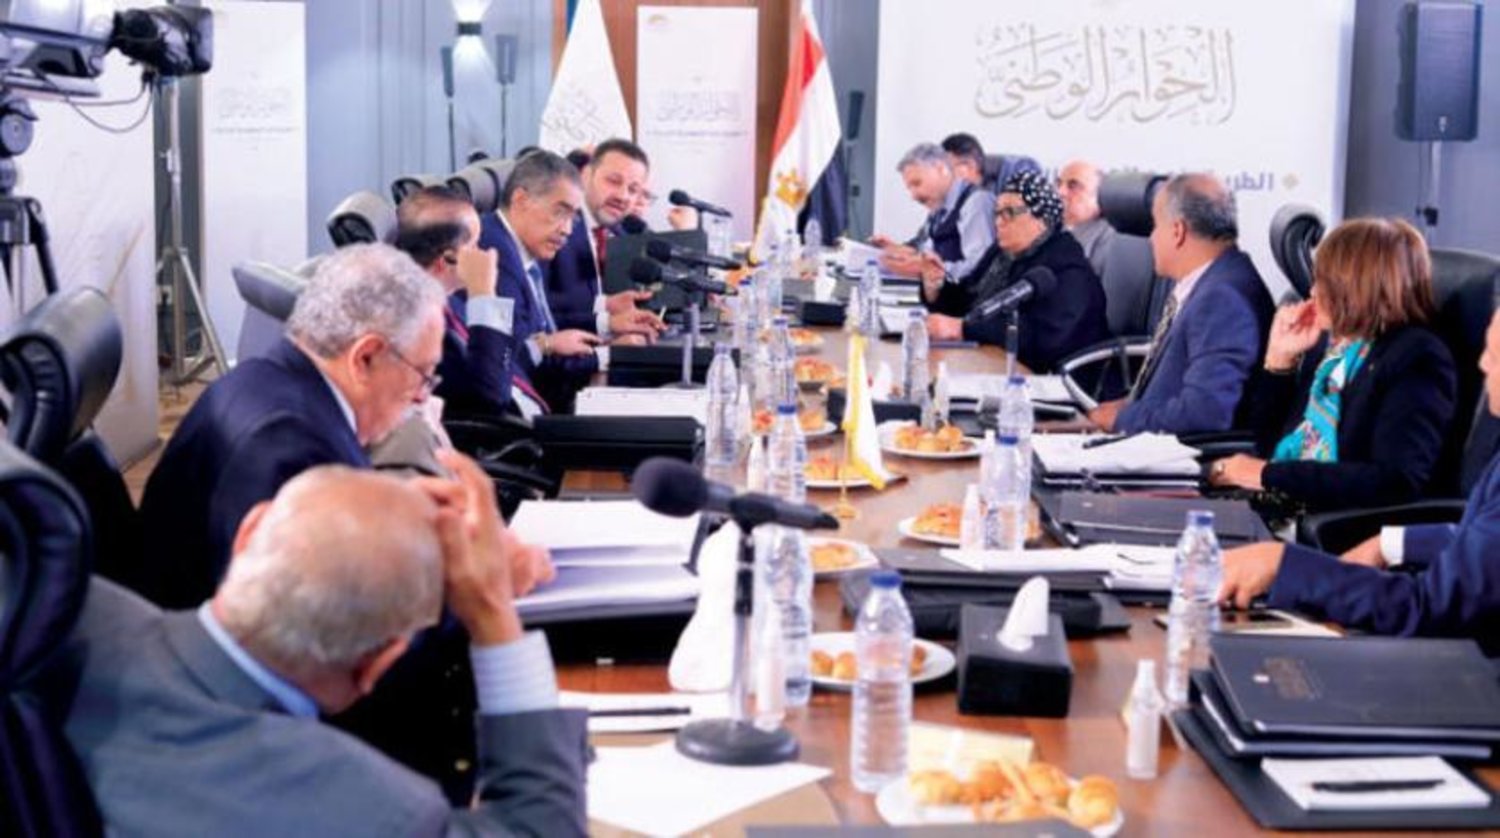 Mısır’da ulusal çapta bir diyalog oluşturulması amacıyla il toplantı geçen yıl temmuz ayında gerçekleştirildi. (Ulusal Diyalog Facebook resmi sayfası)